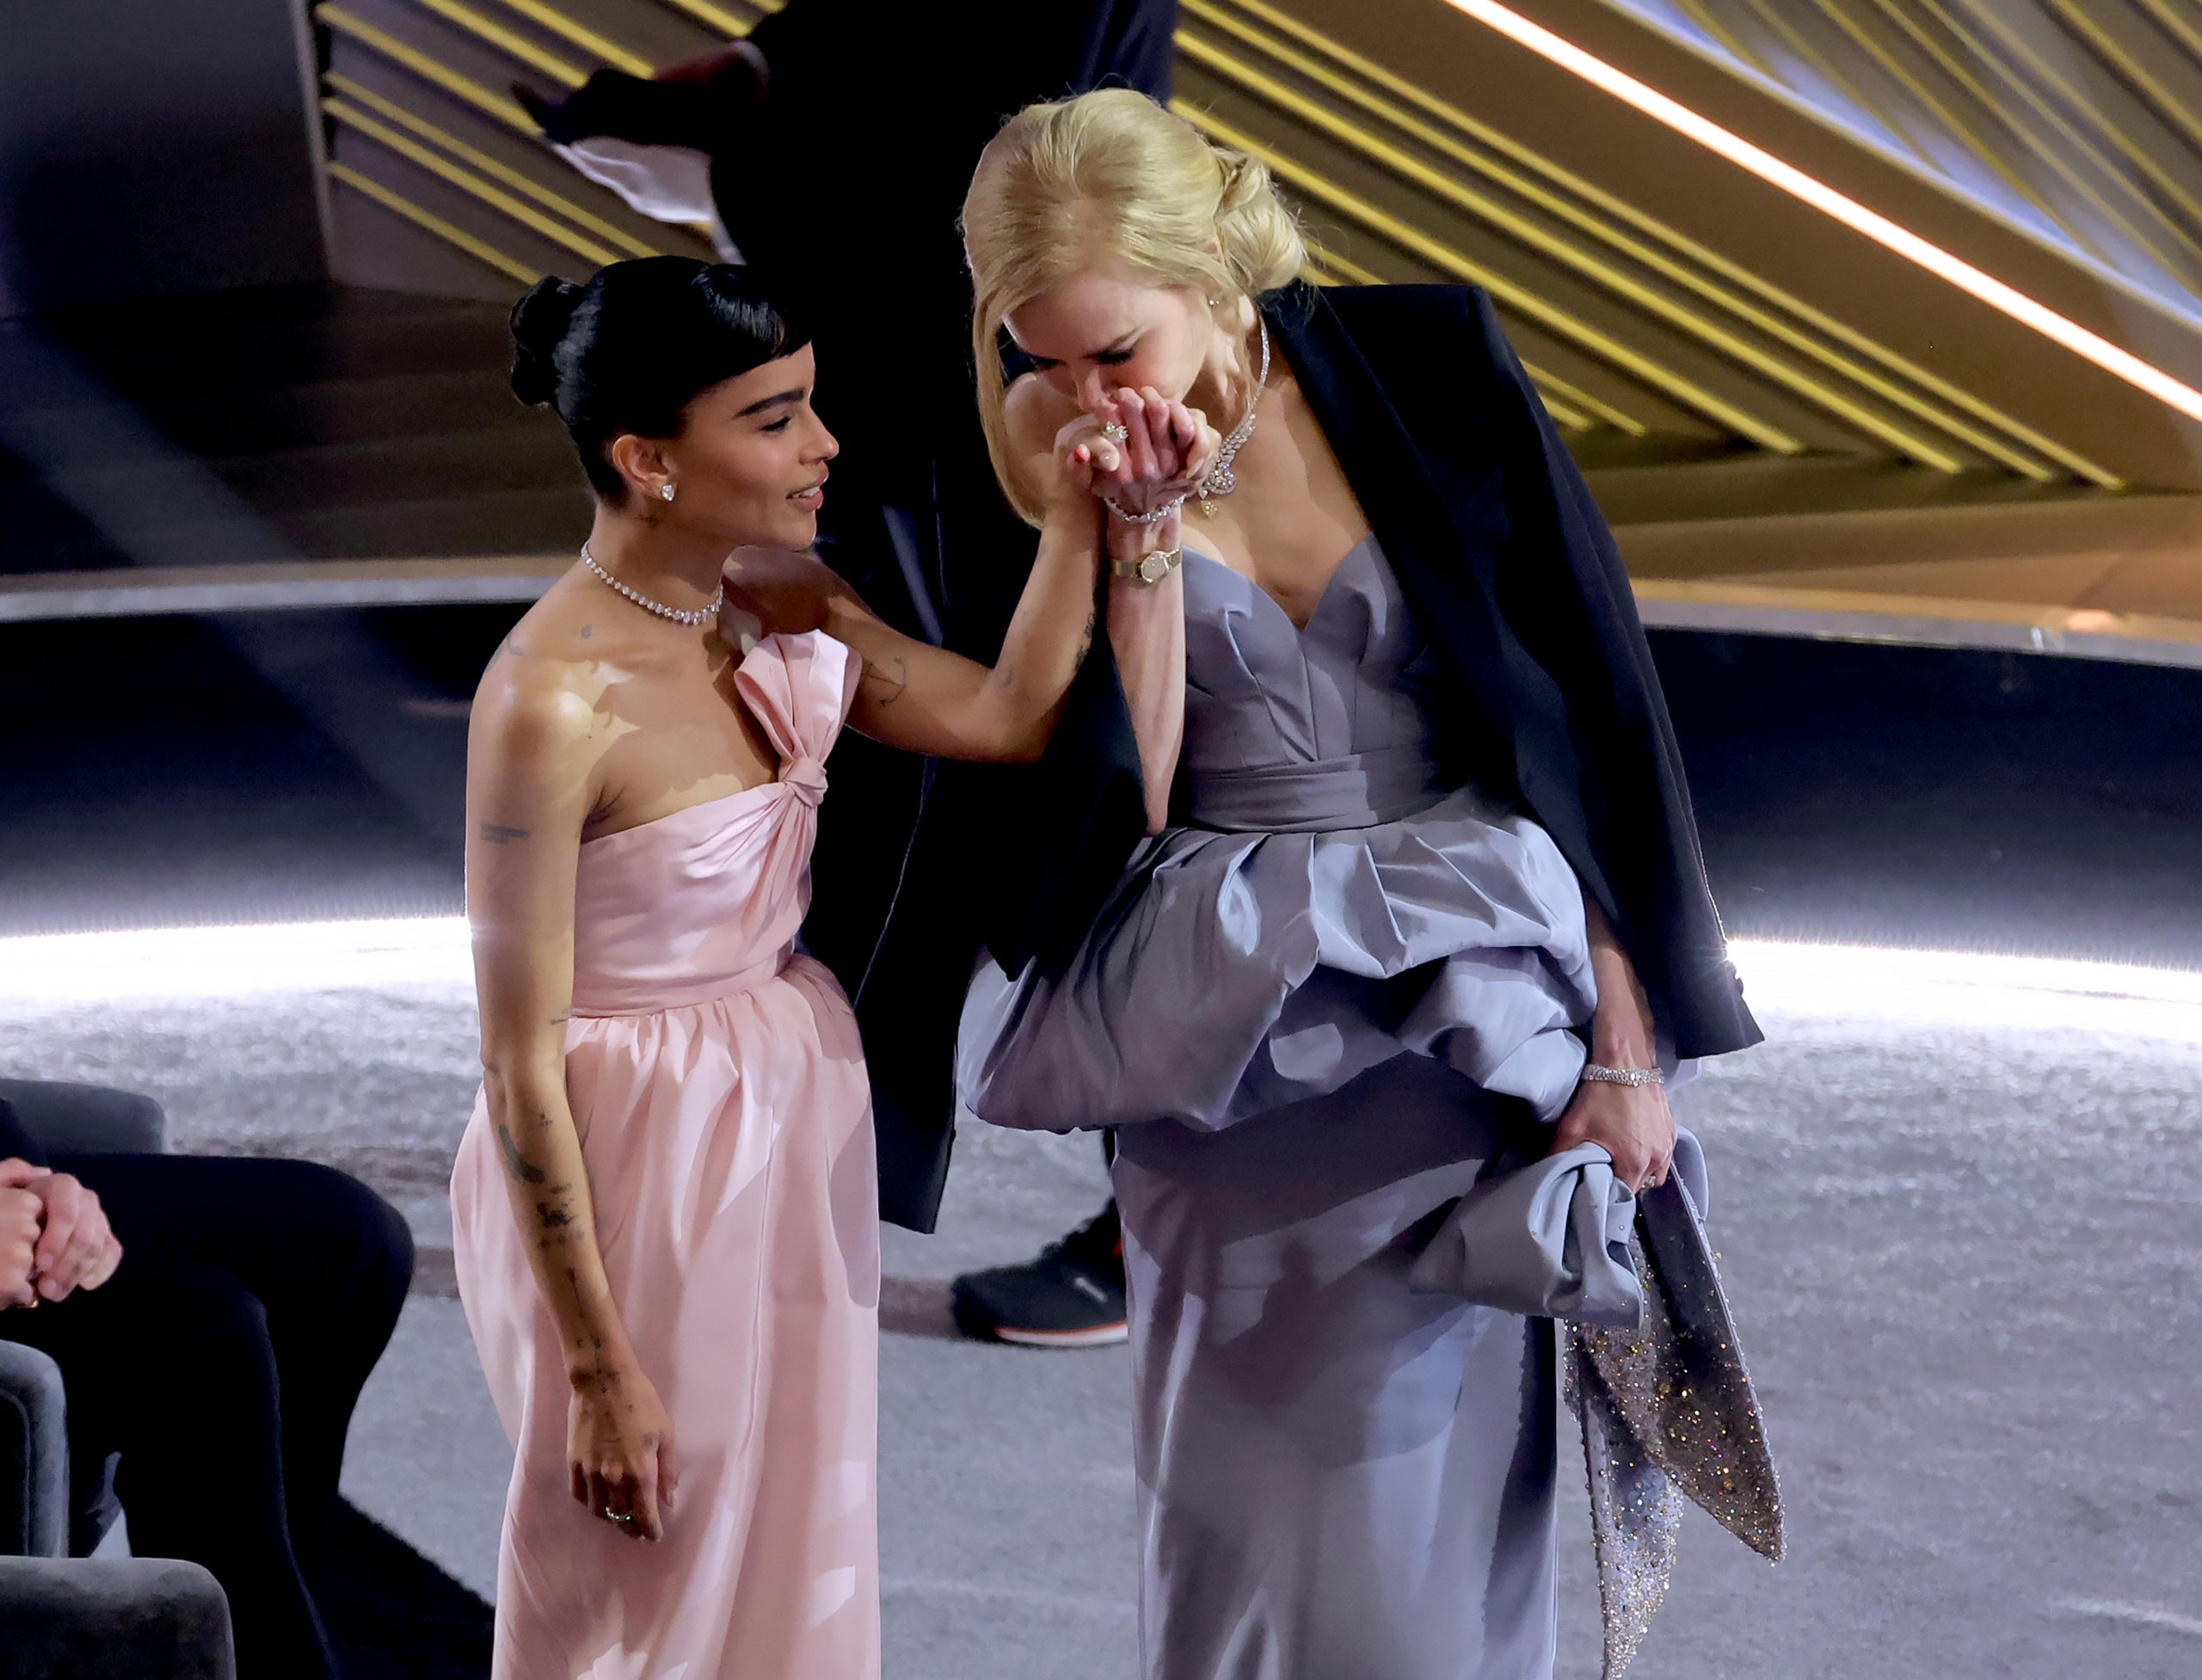 10 epic στιγμές που δεν θα ξεχάσουμε από τη φετινή απονομή των Oscars